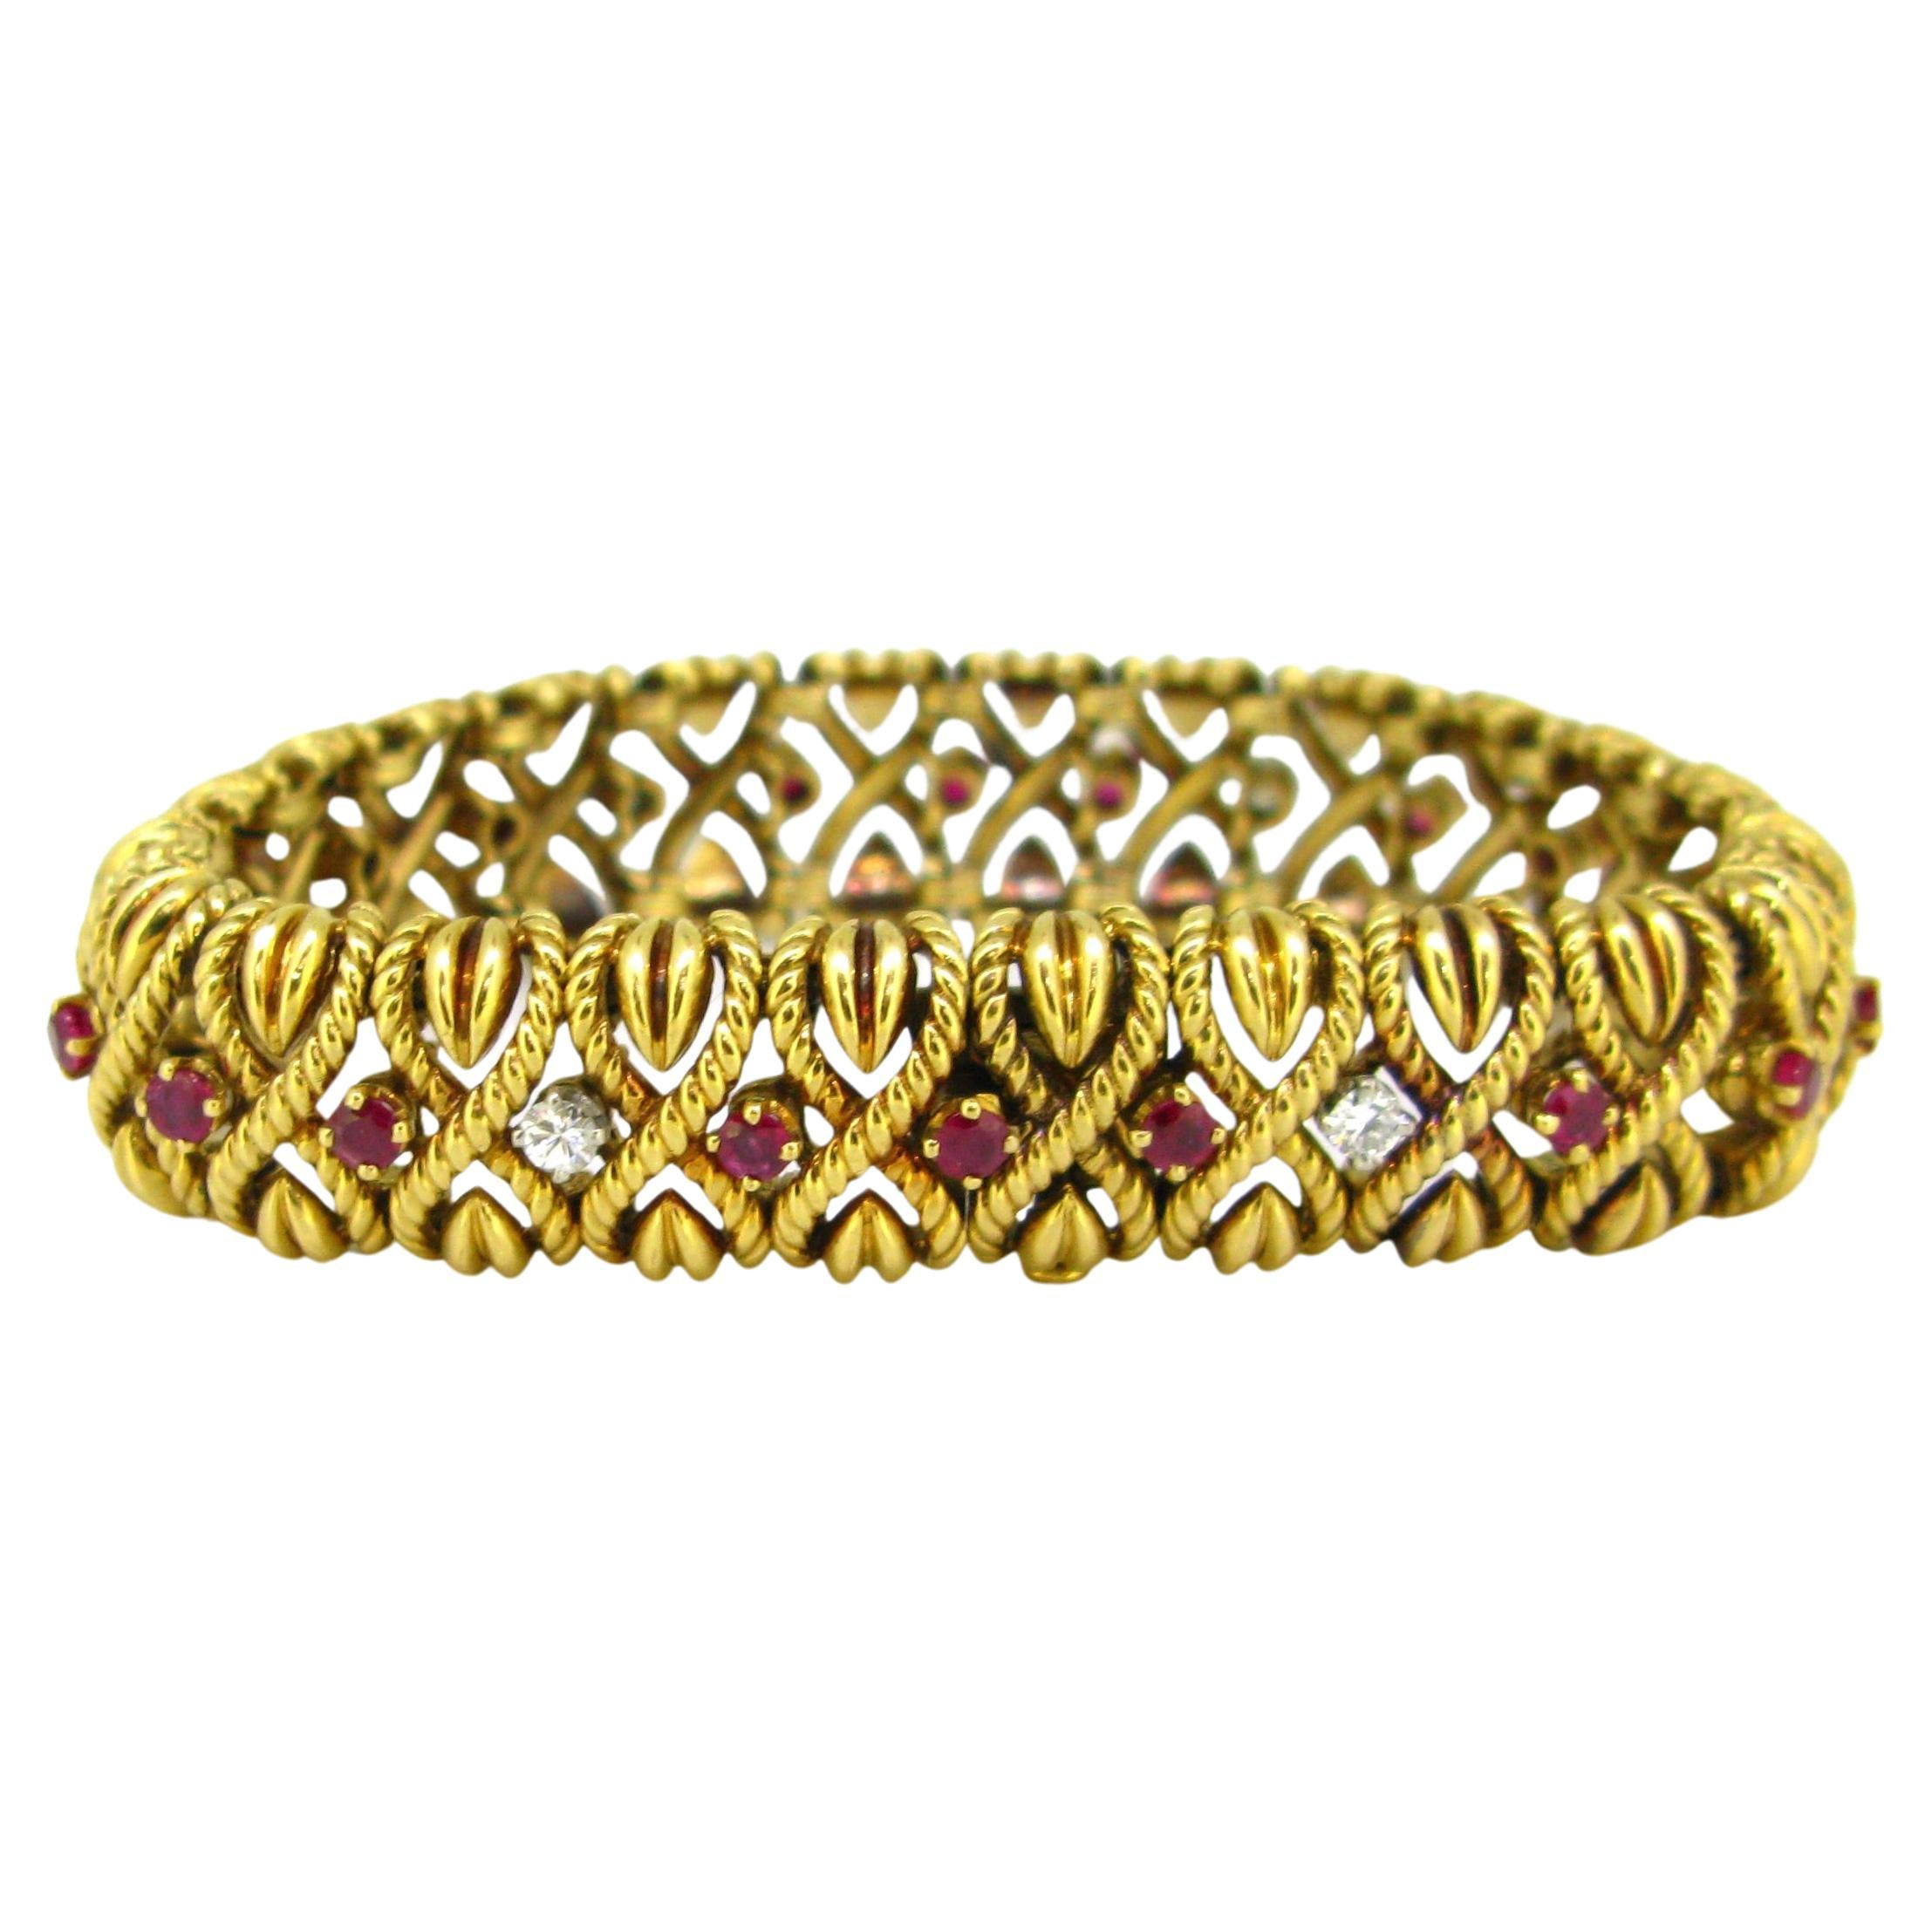 Vintage Ruby and Diamonds Gold Bracelet by André Vassort for Van Cleef & Arpels For Sale